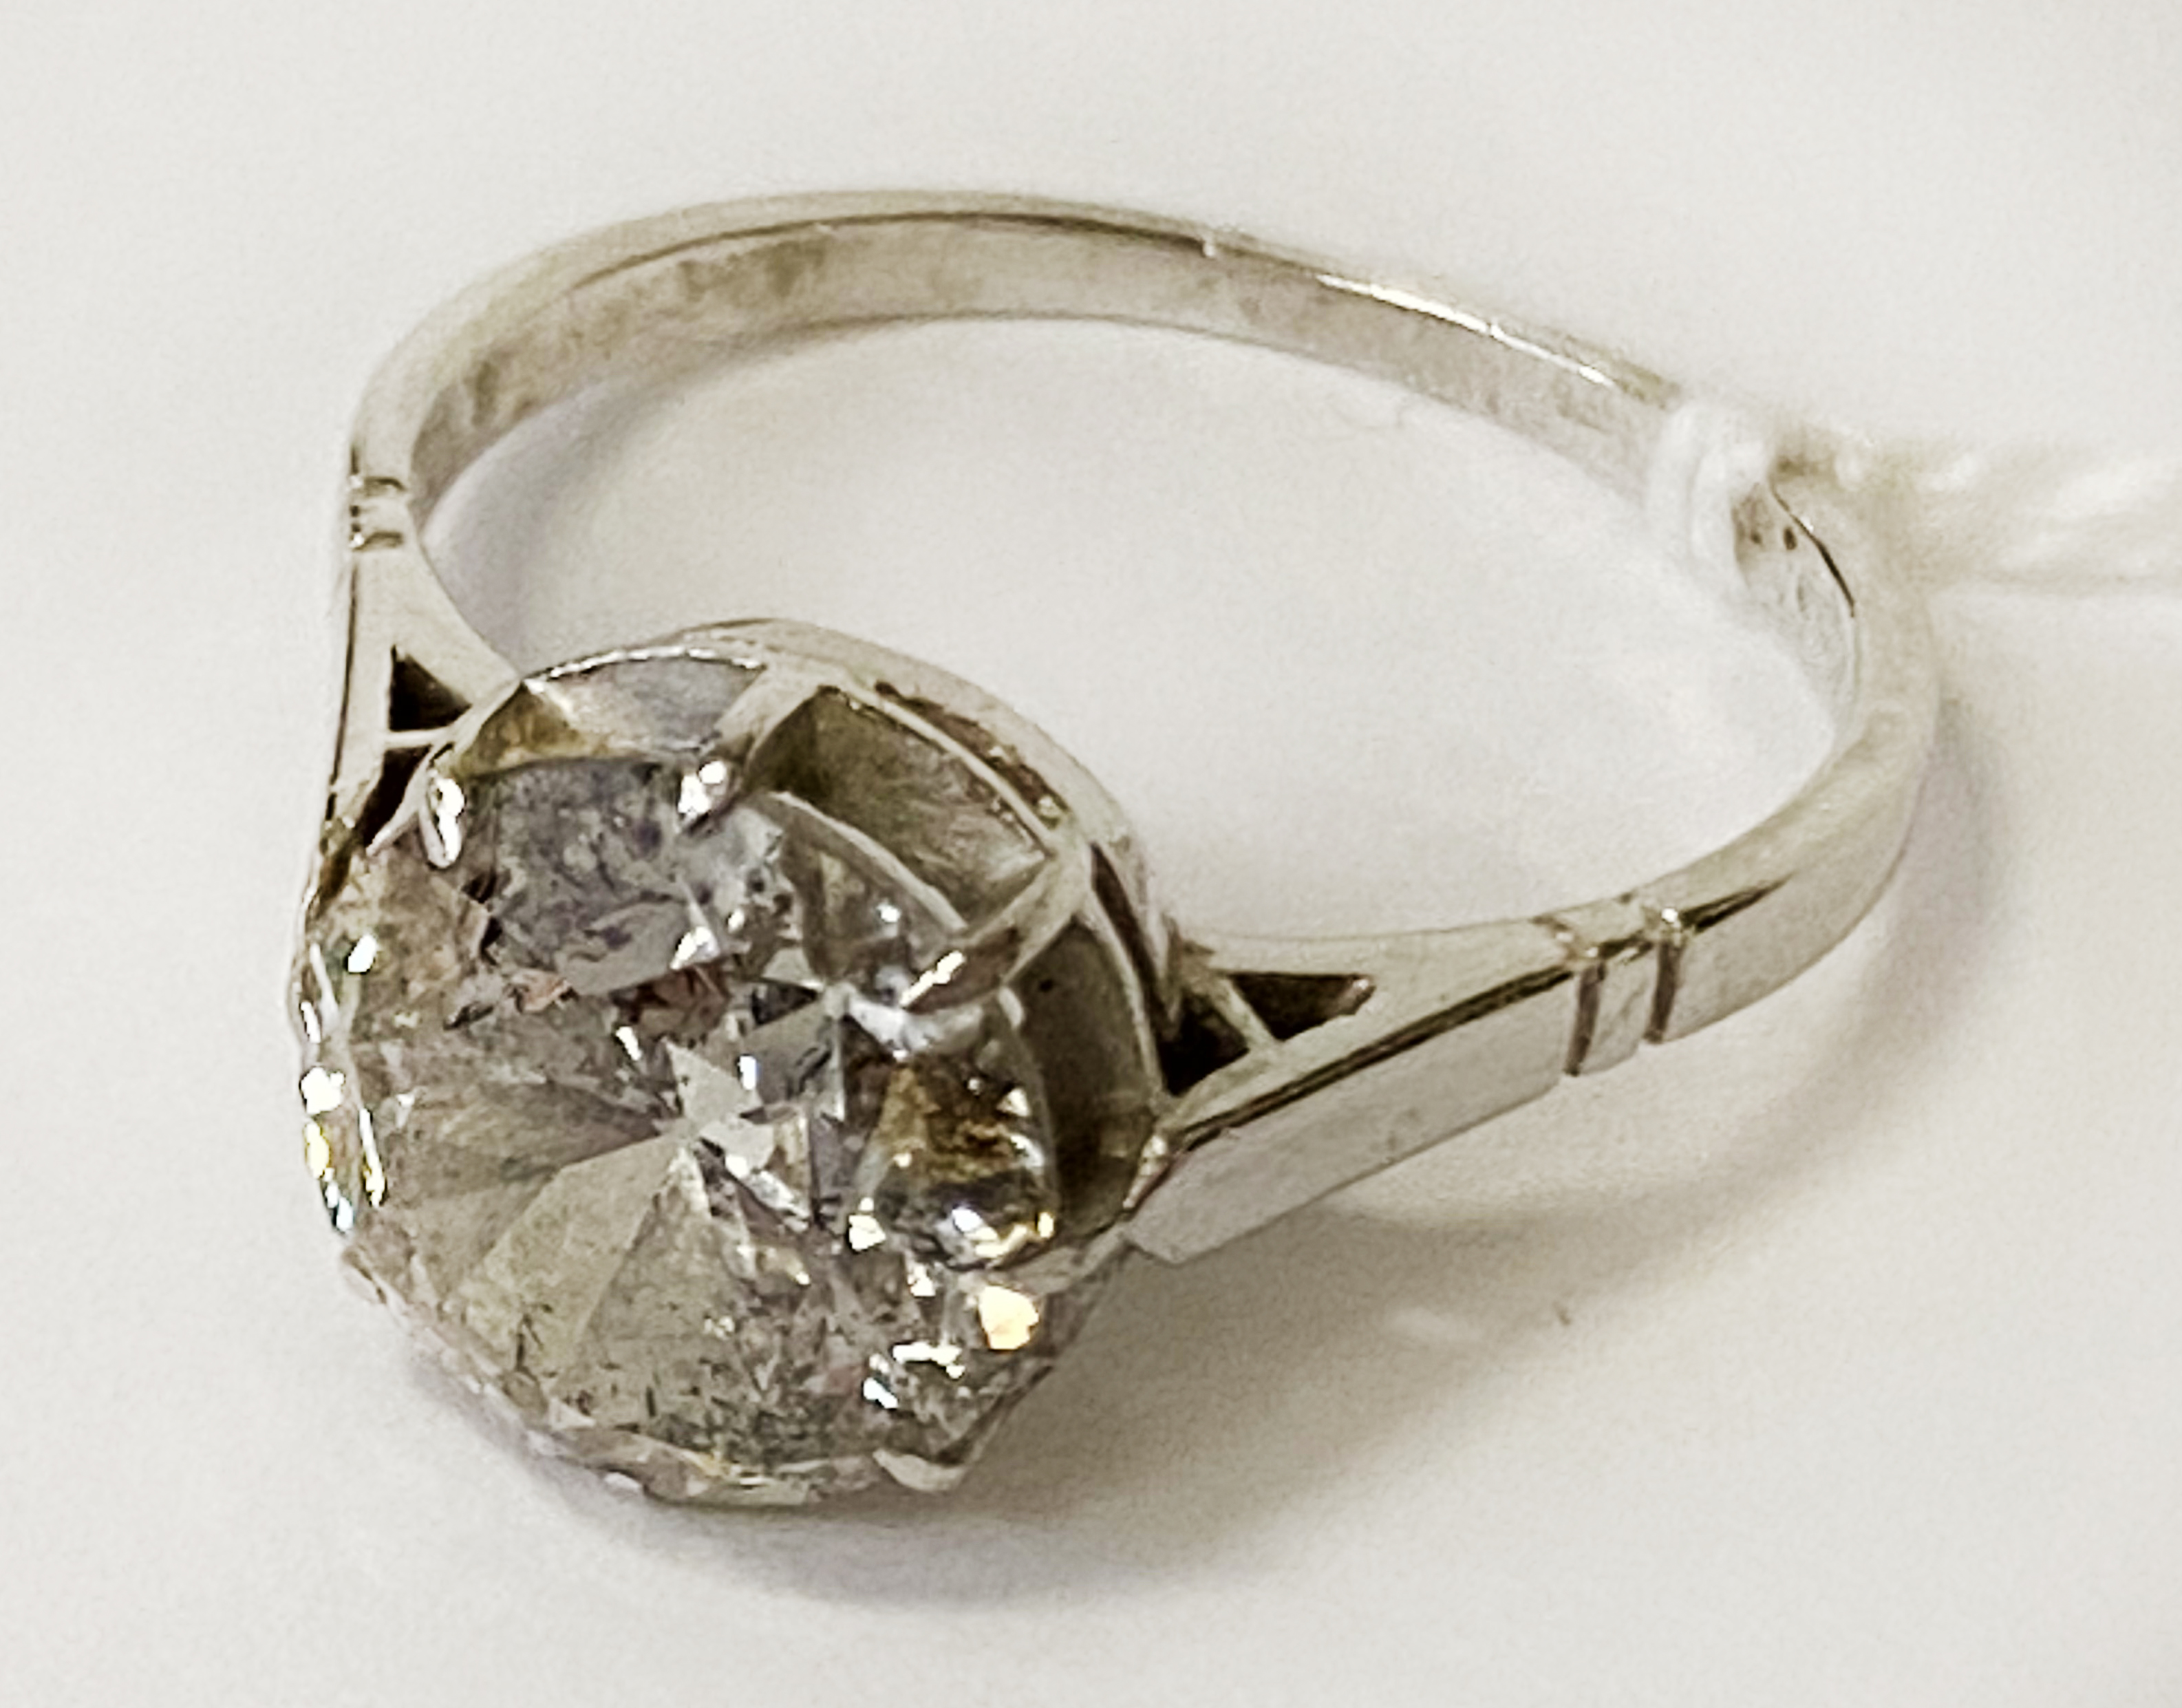 3 CARAT BRILLIANT CUT LADIES DIAMOND RING SET IN PLATINUM SIZE M 3.8 GRAMS APPROX